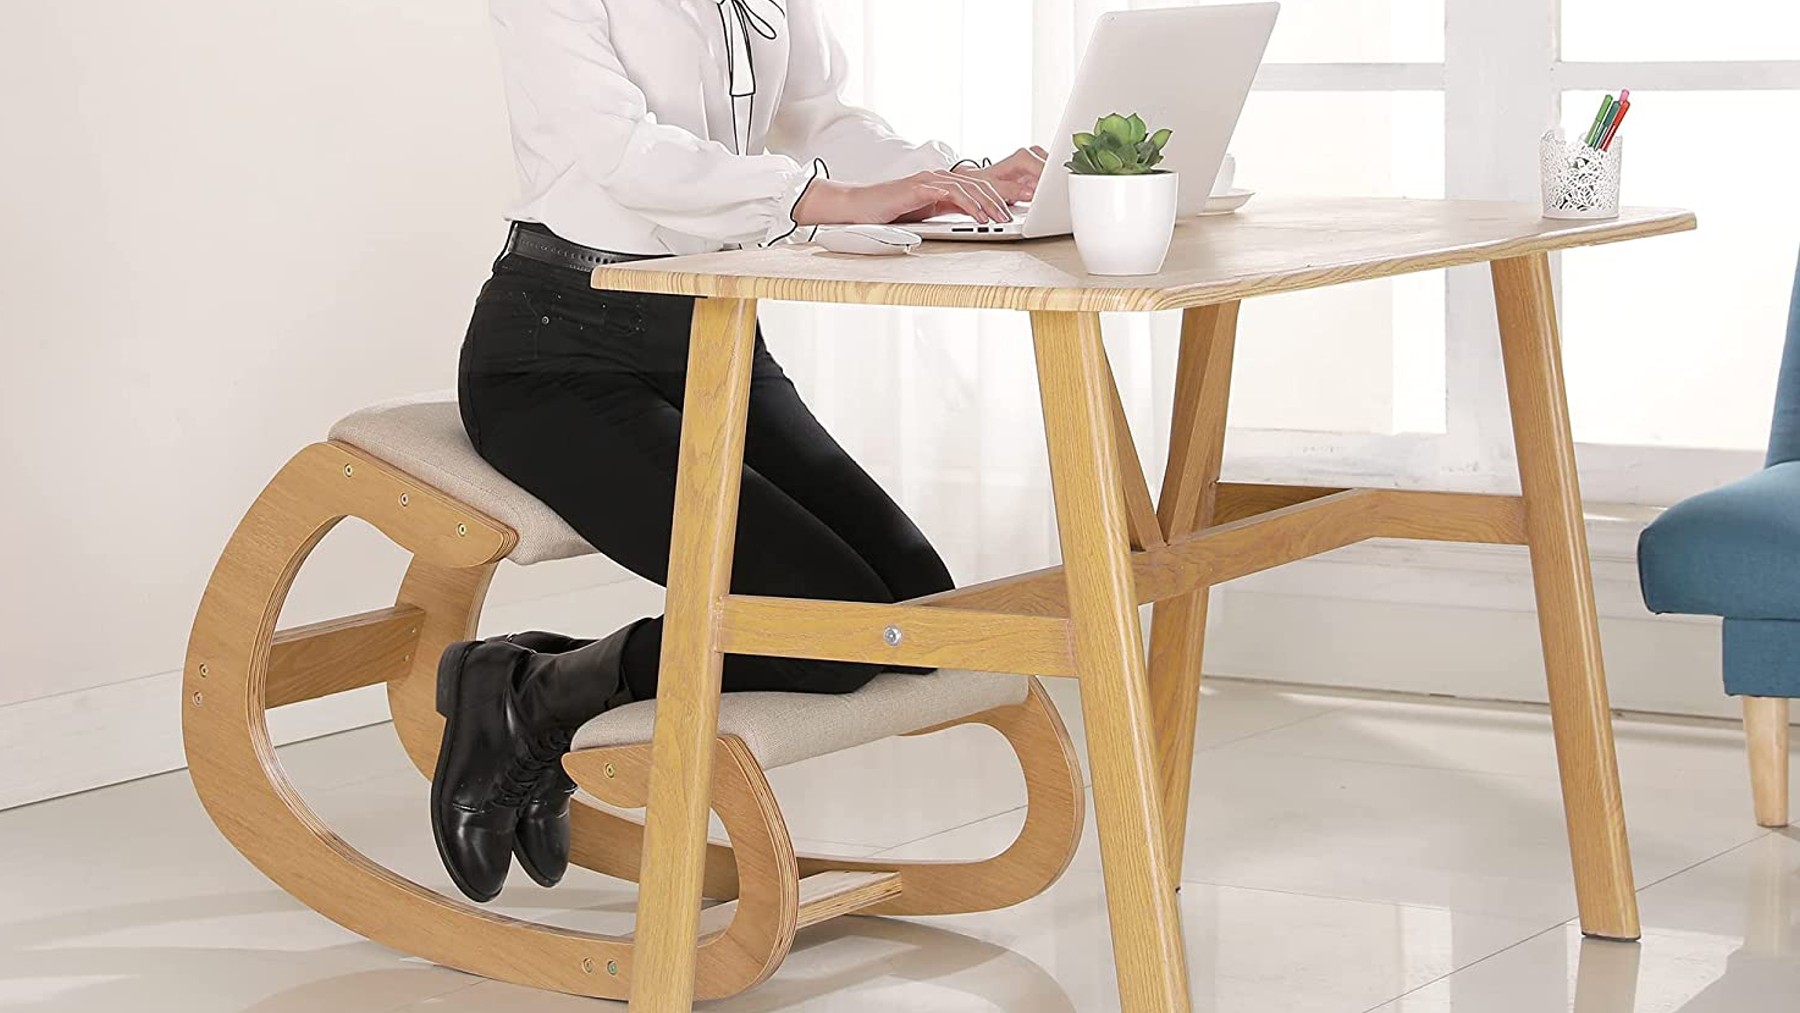 Siéntate en una posición más adecuada con estas sillas ergonómicas